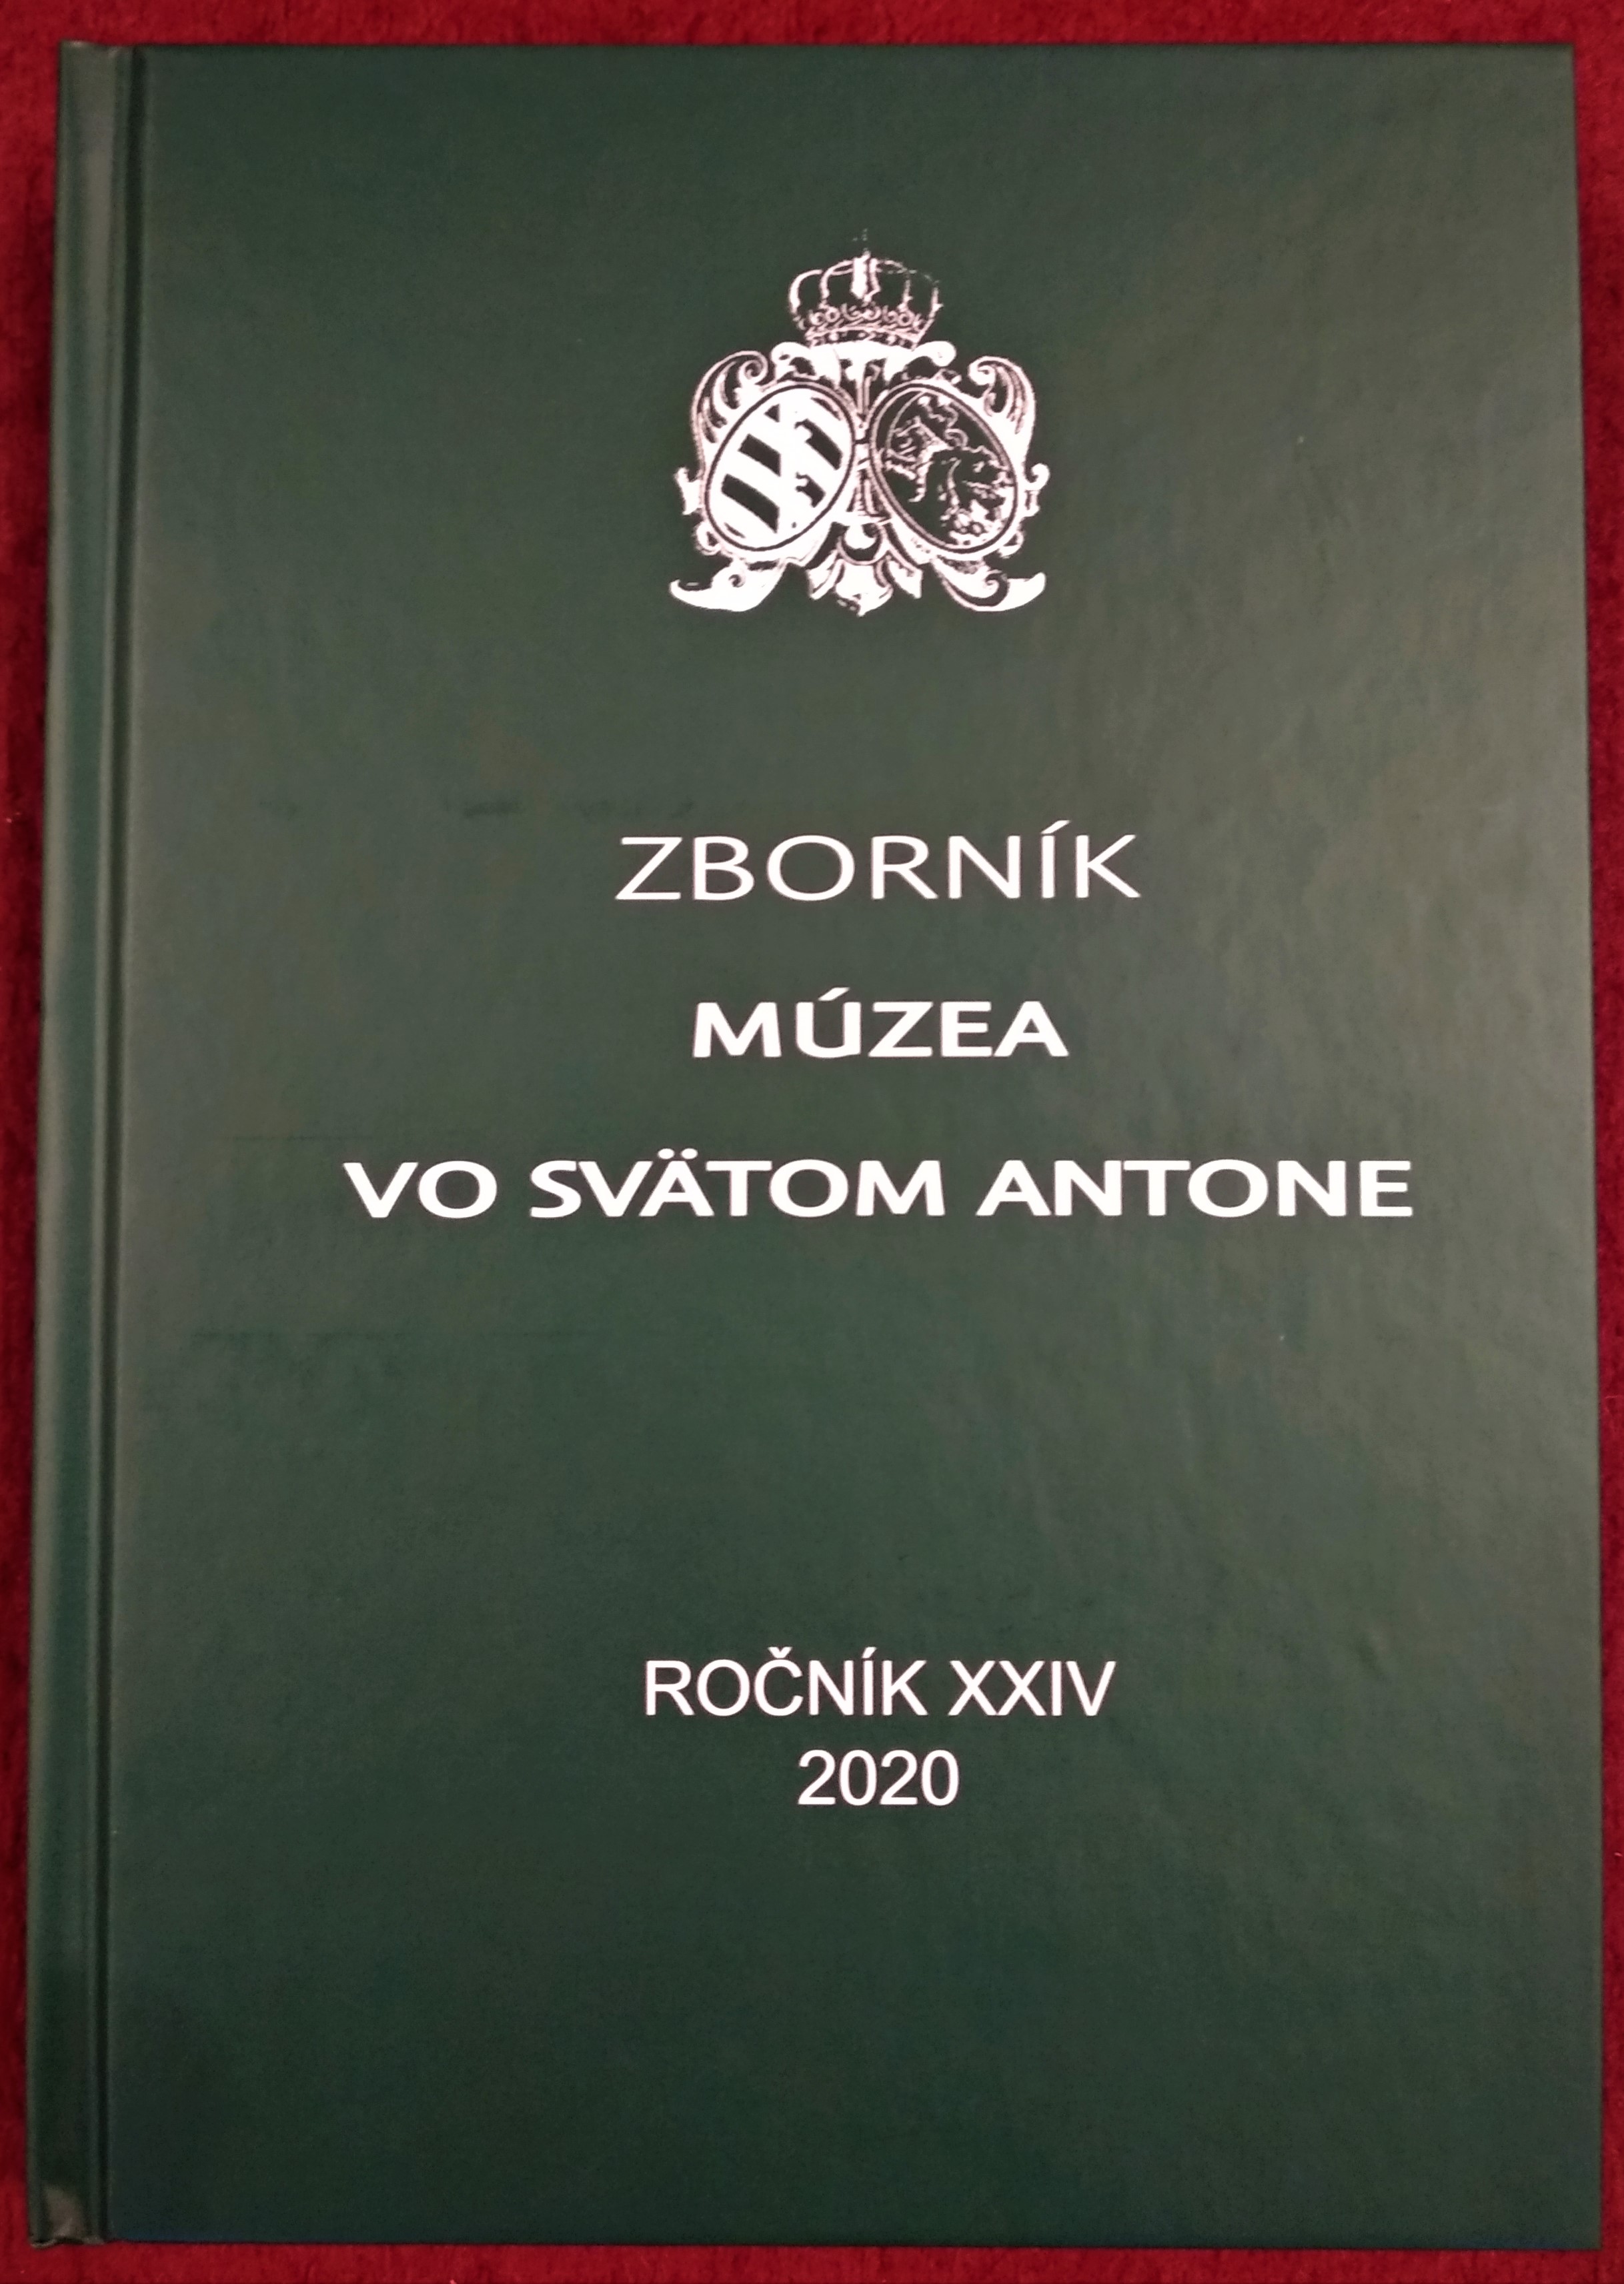 Zbornik-2020.jpg